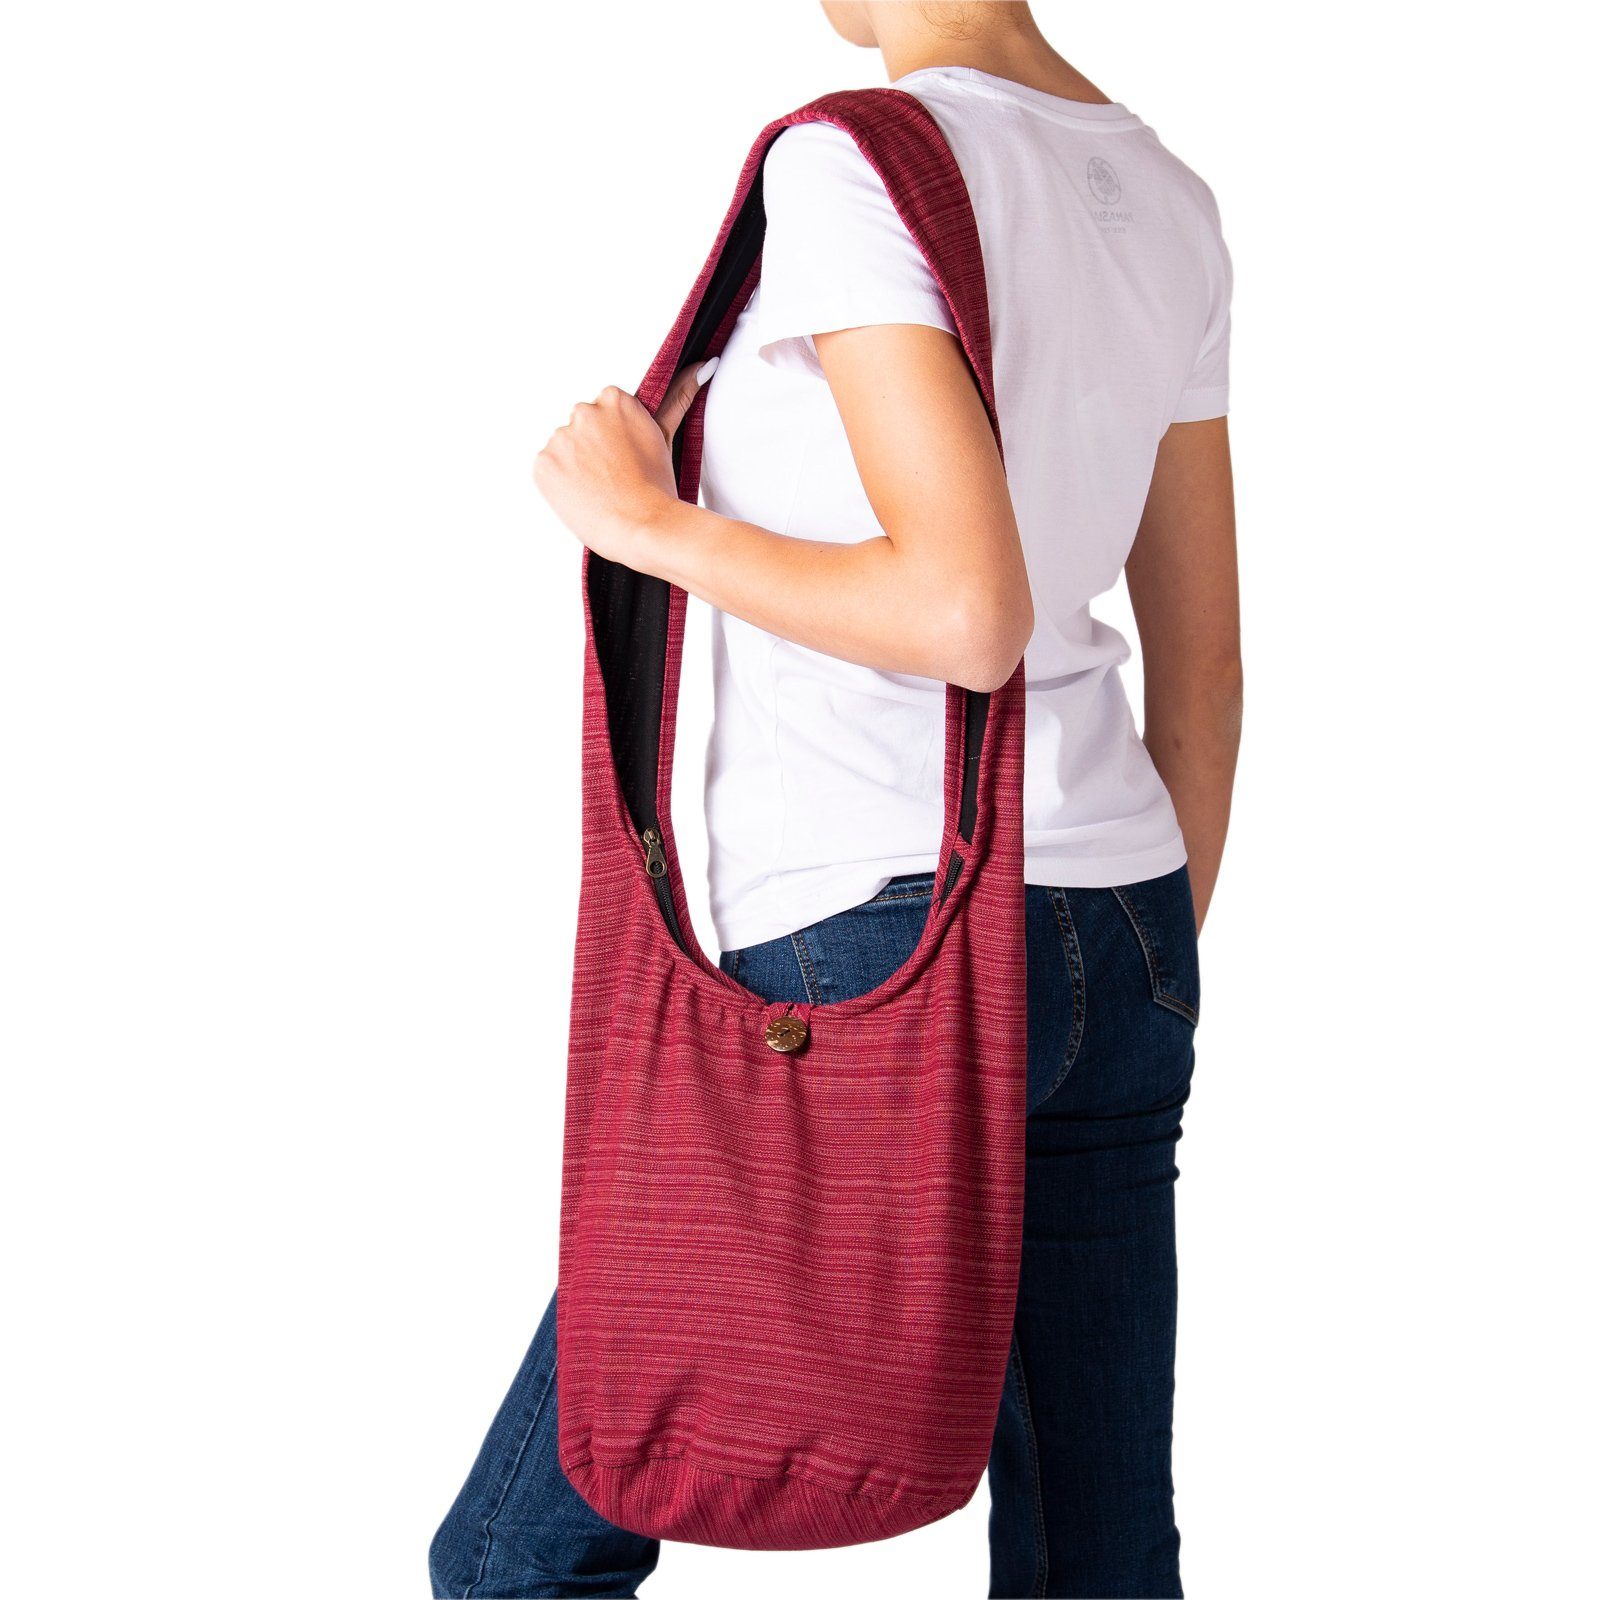 als Lini bordeux aus Yogatasche Größen oder nutzbar Schultertasche, Baumwolle 100% PANASIAM Wickeltasche Beuteltasche Strandtasche Schulterbeutel Handtasche In 2 auch rot